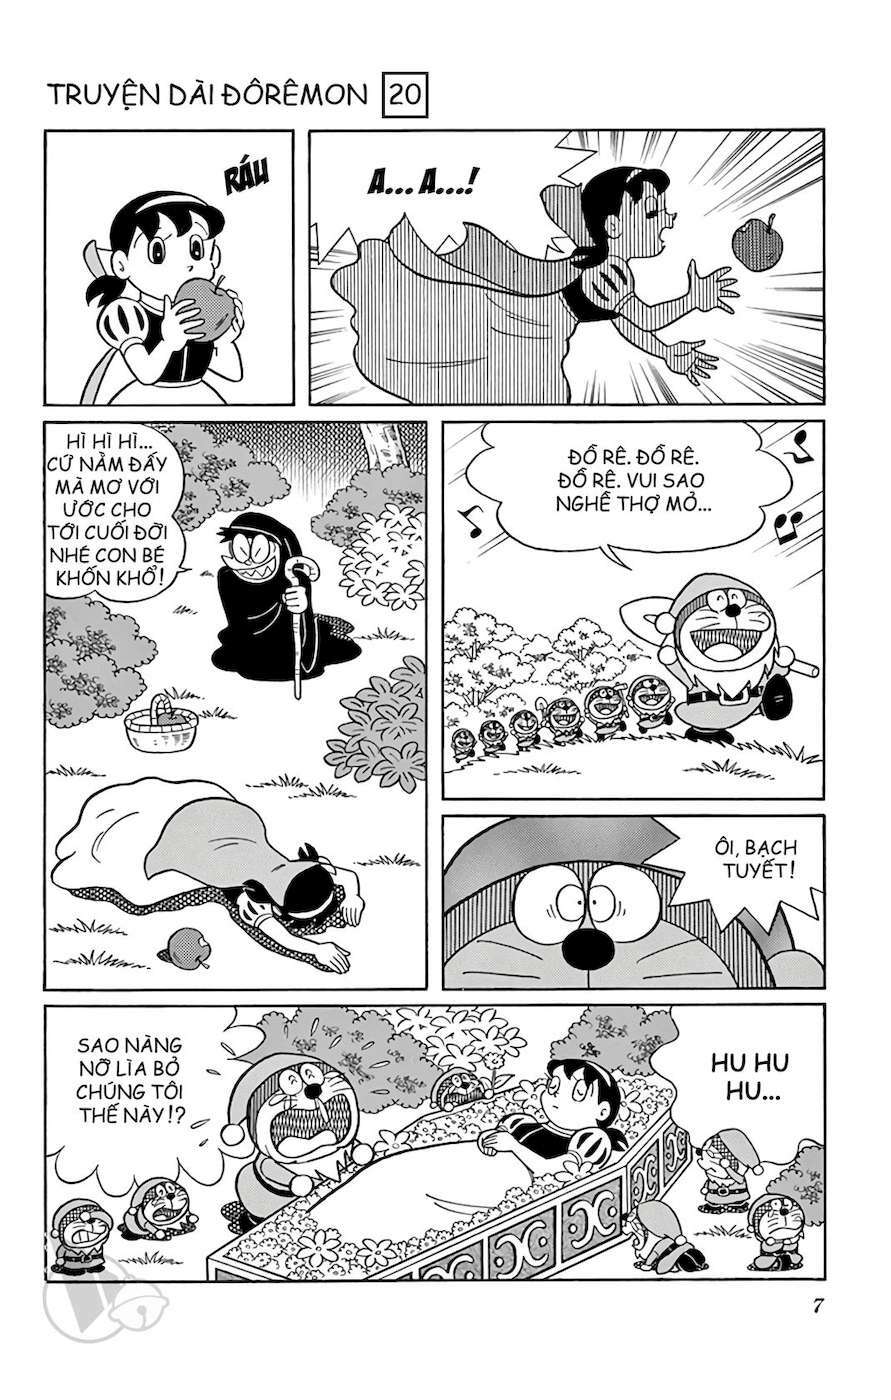 Truyện Tranh Doraemon: Truyền Thuyết Về Vua Mặt Trời Nôbita trang 6